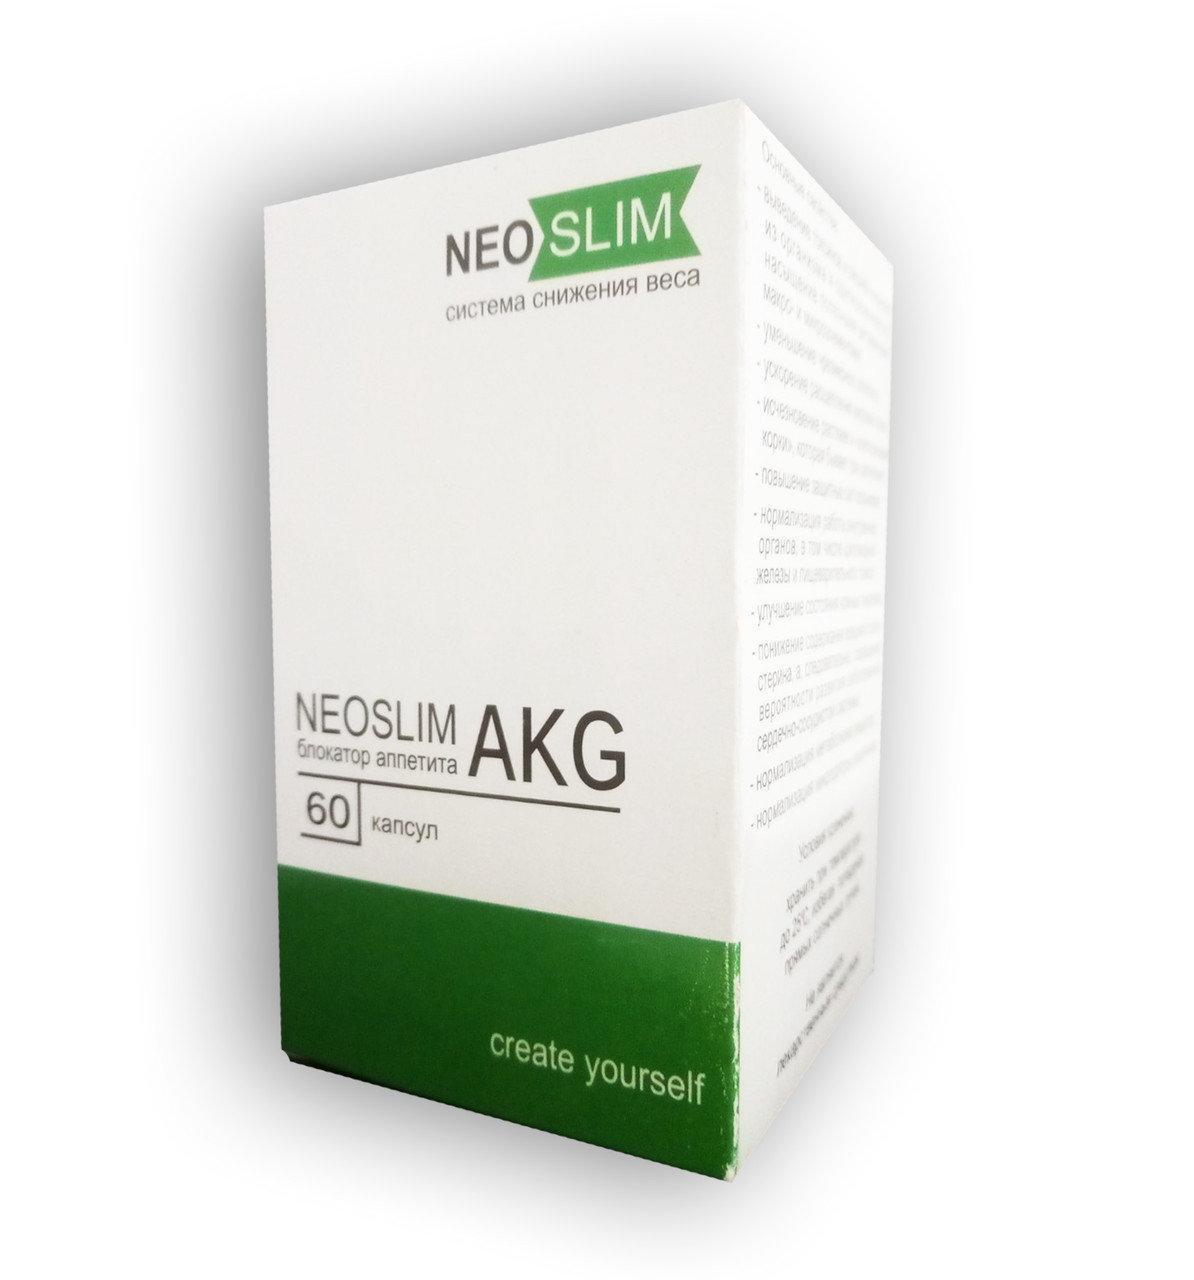 Neo Slim AKG (60)-Комплекс для зниження ваги (Нео Слим АКГ), ціна 328  грн, купити в Києві-Prom.ua (ID#1106606484) 